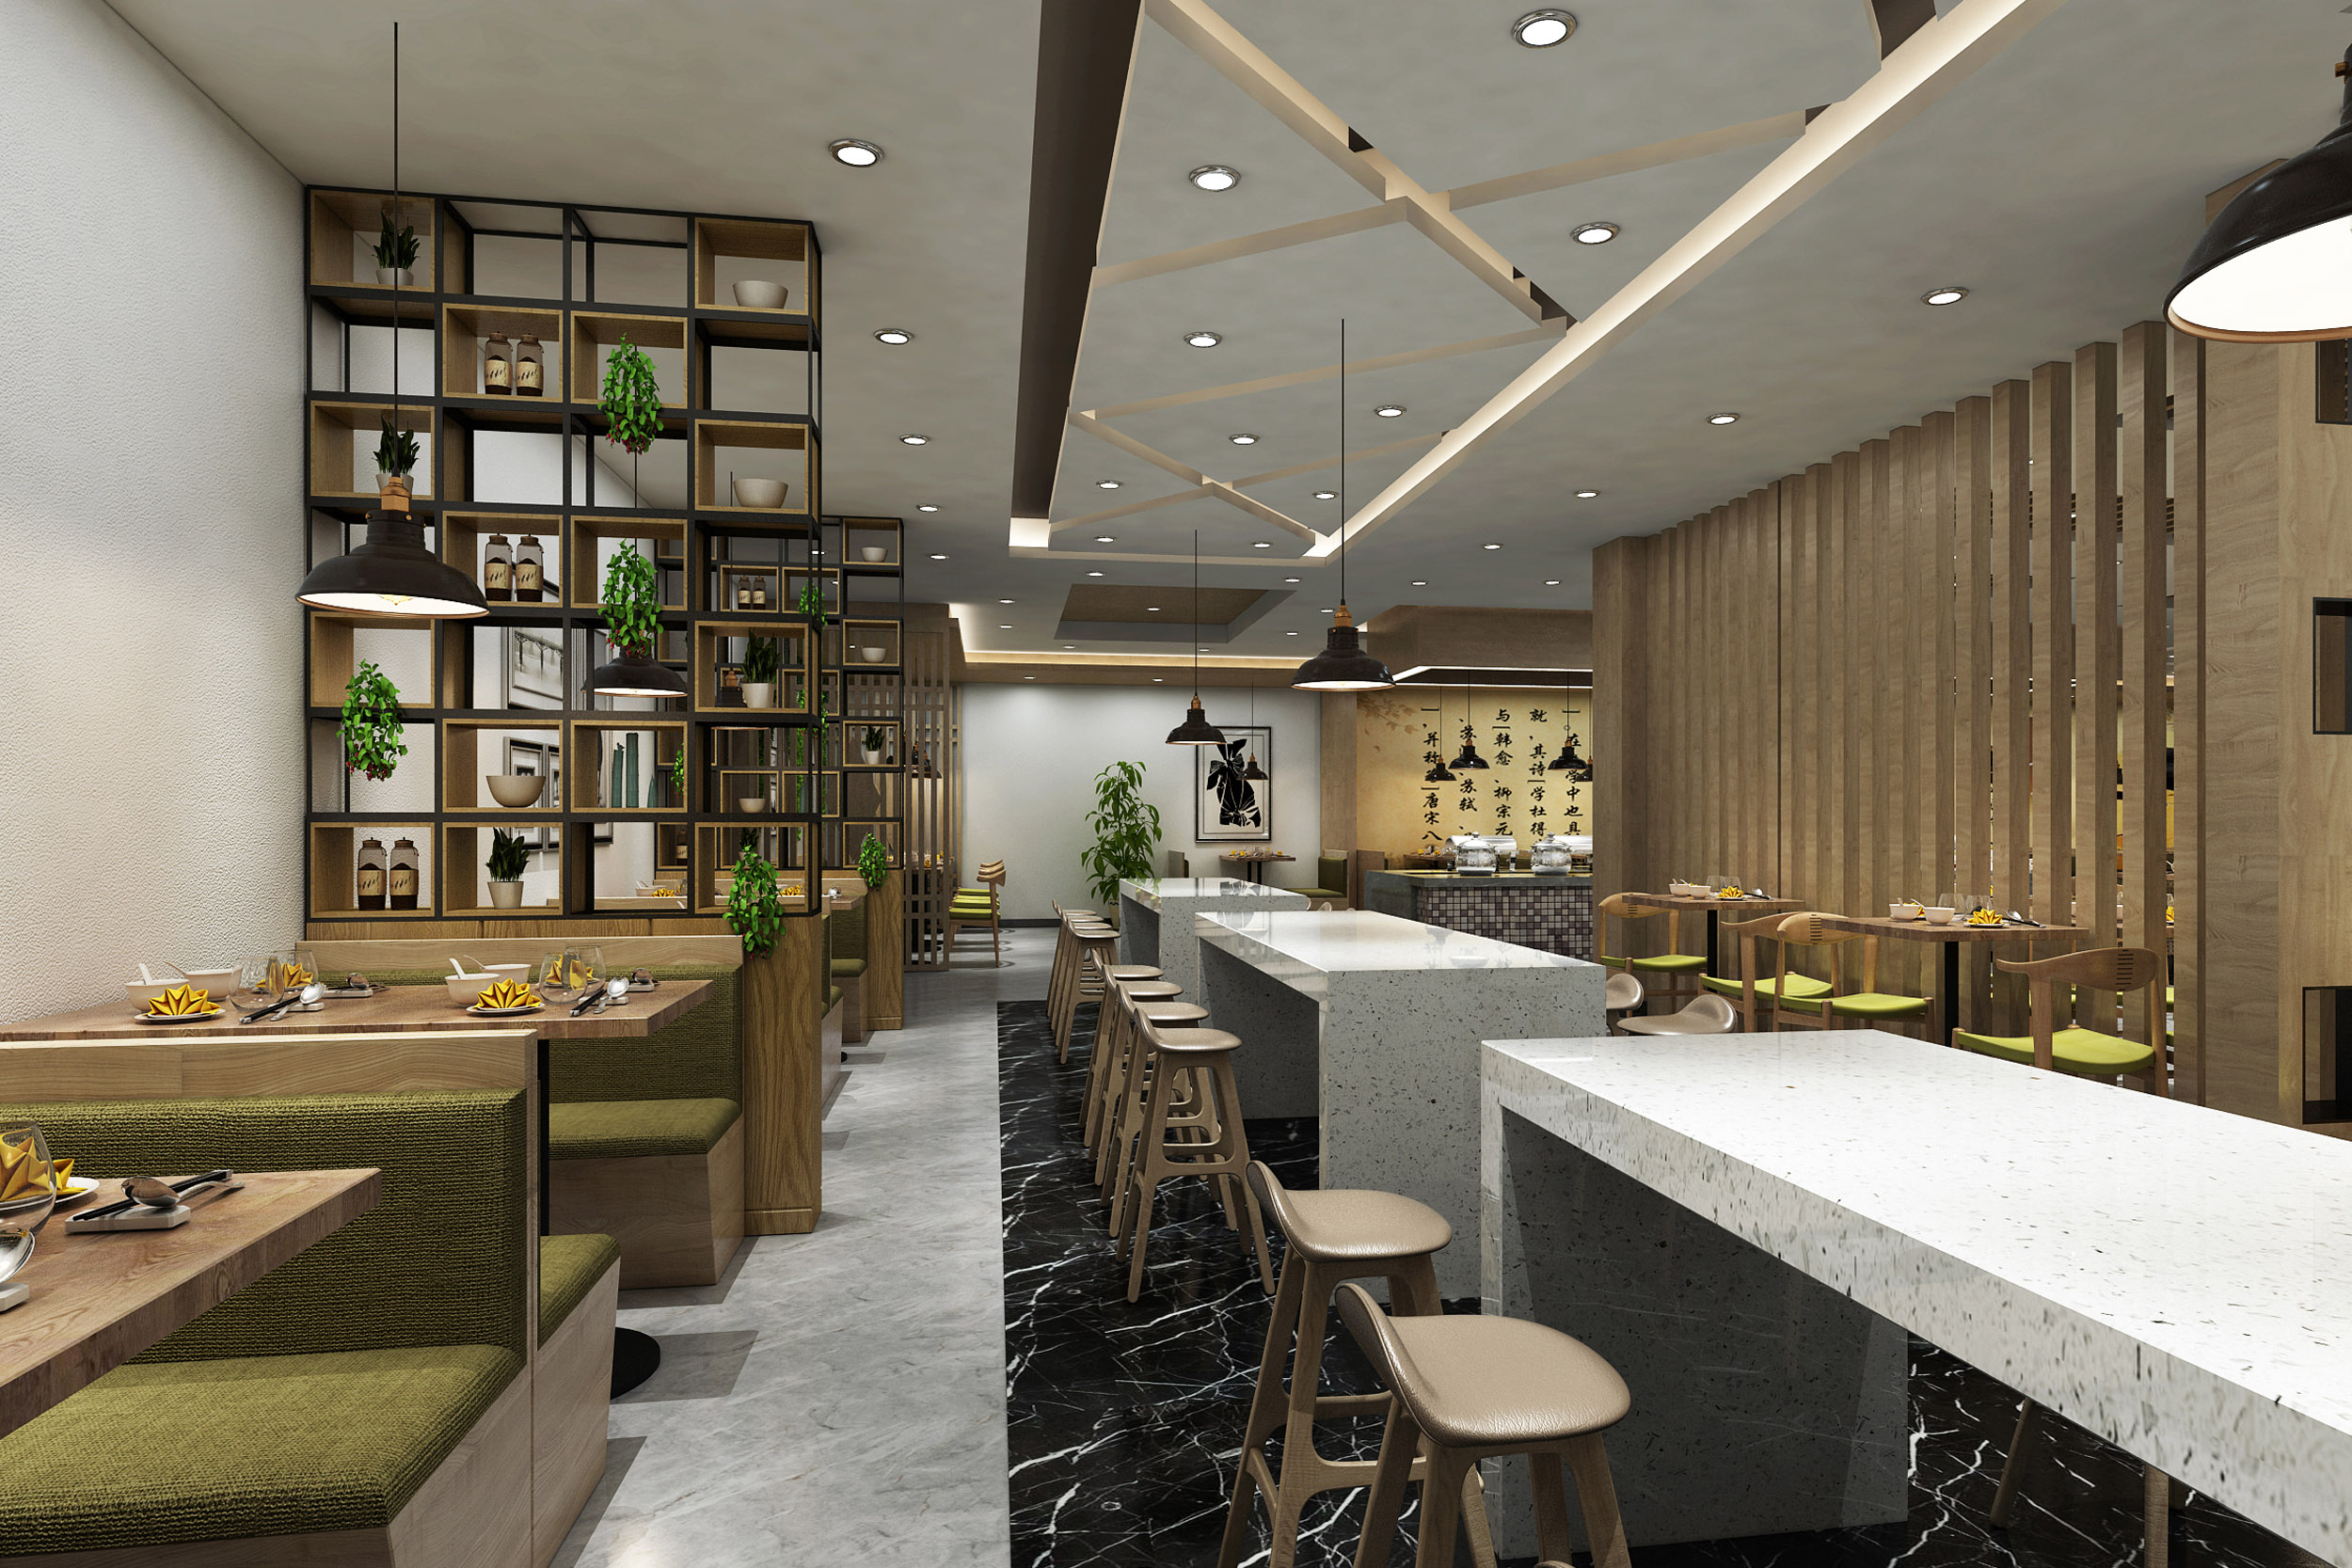 享当当——江西高速公路连锁餐厅整体空间设计